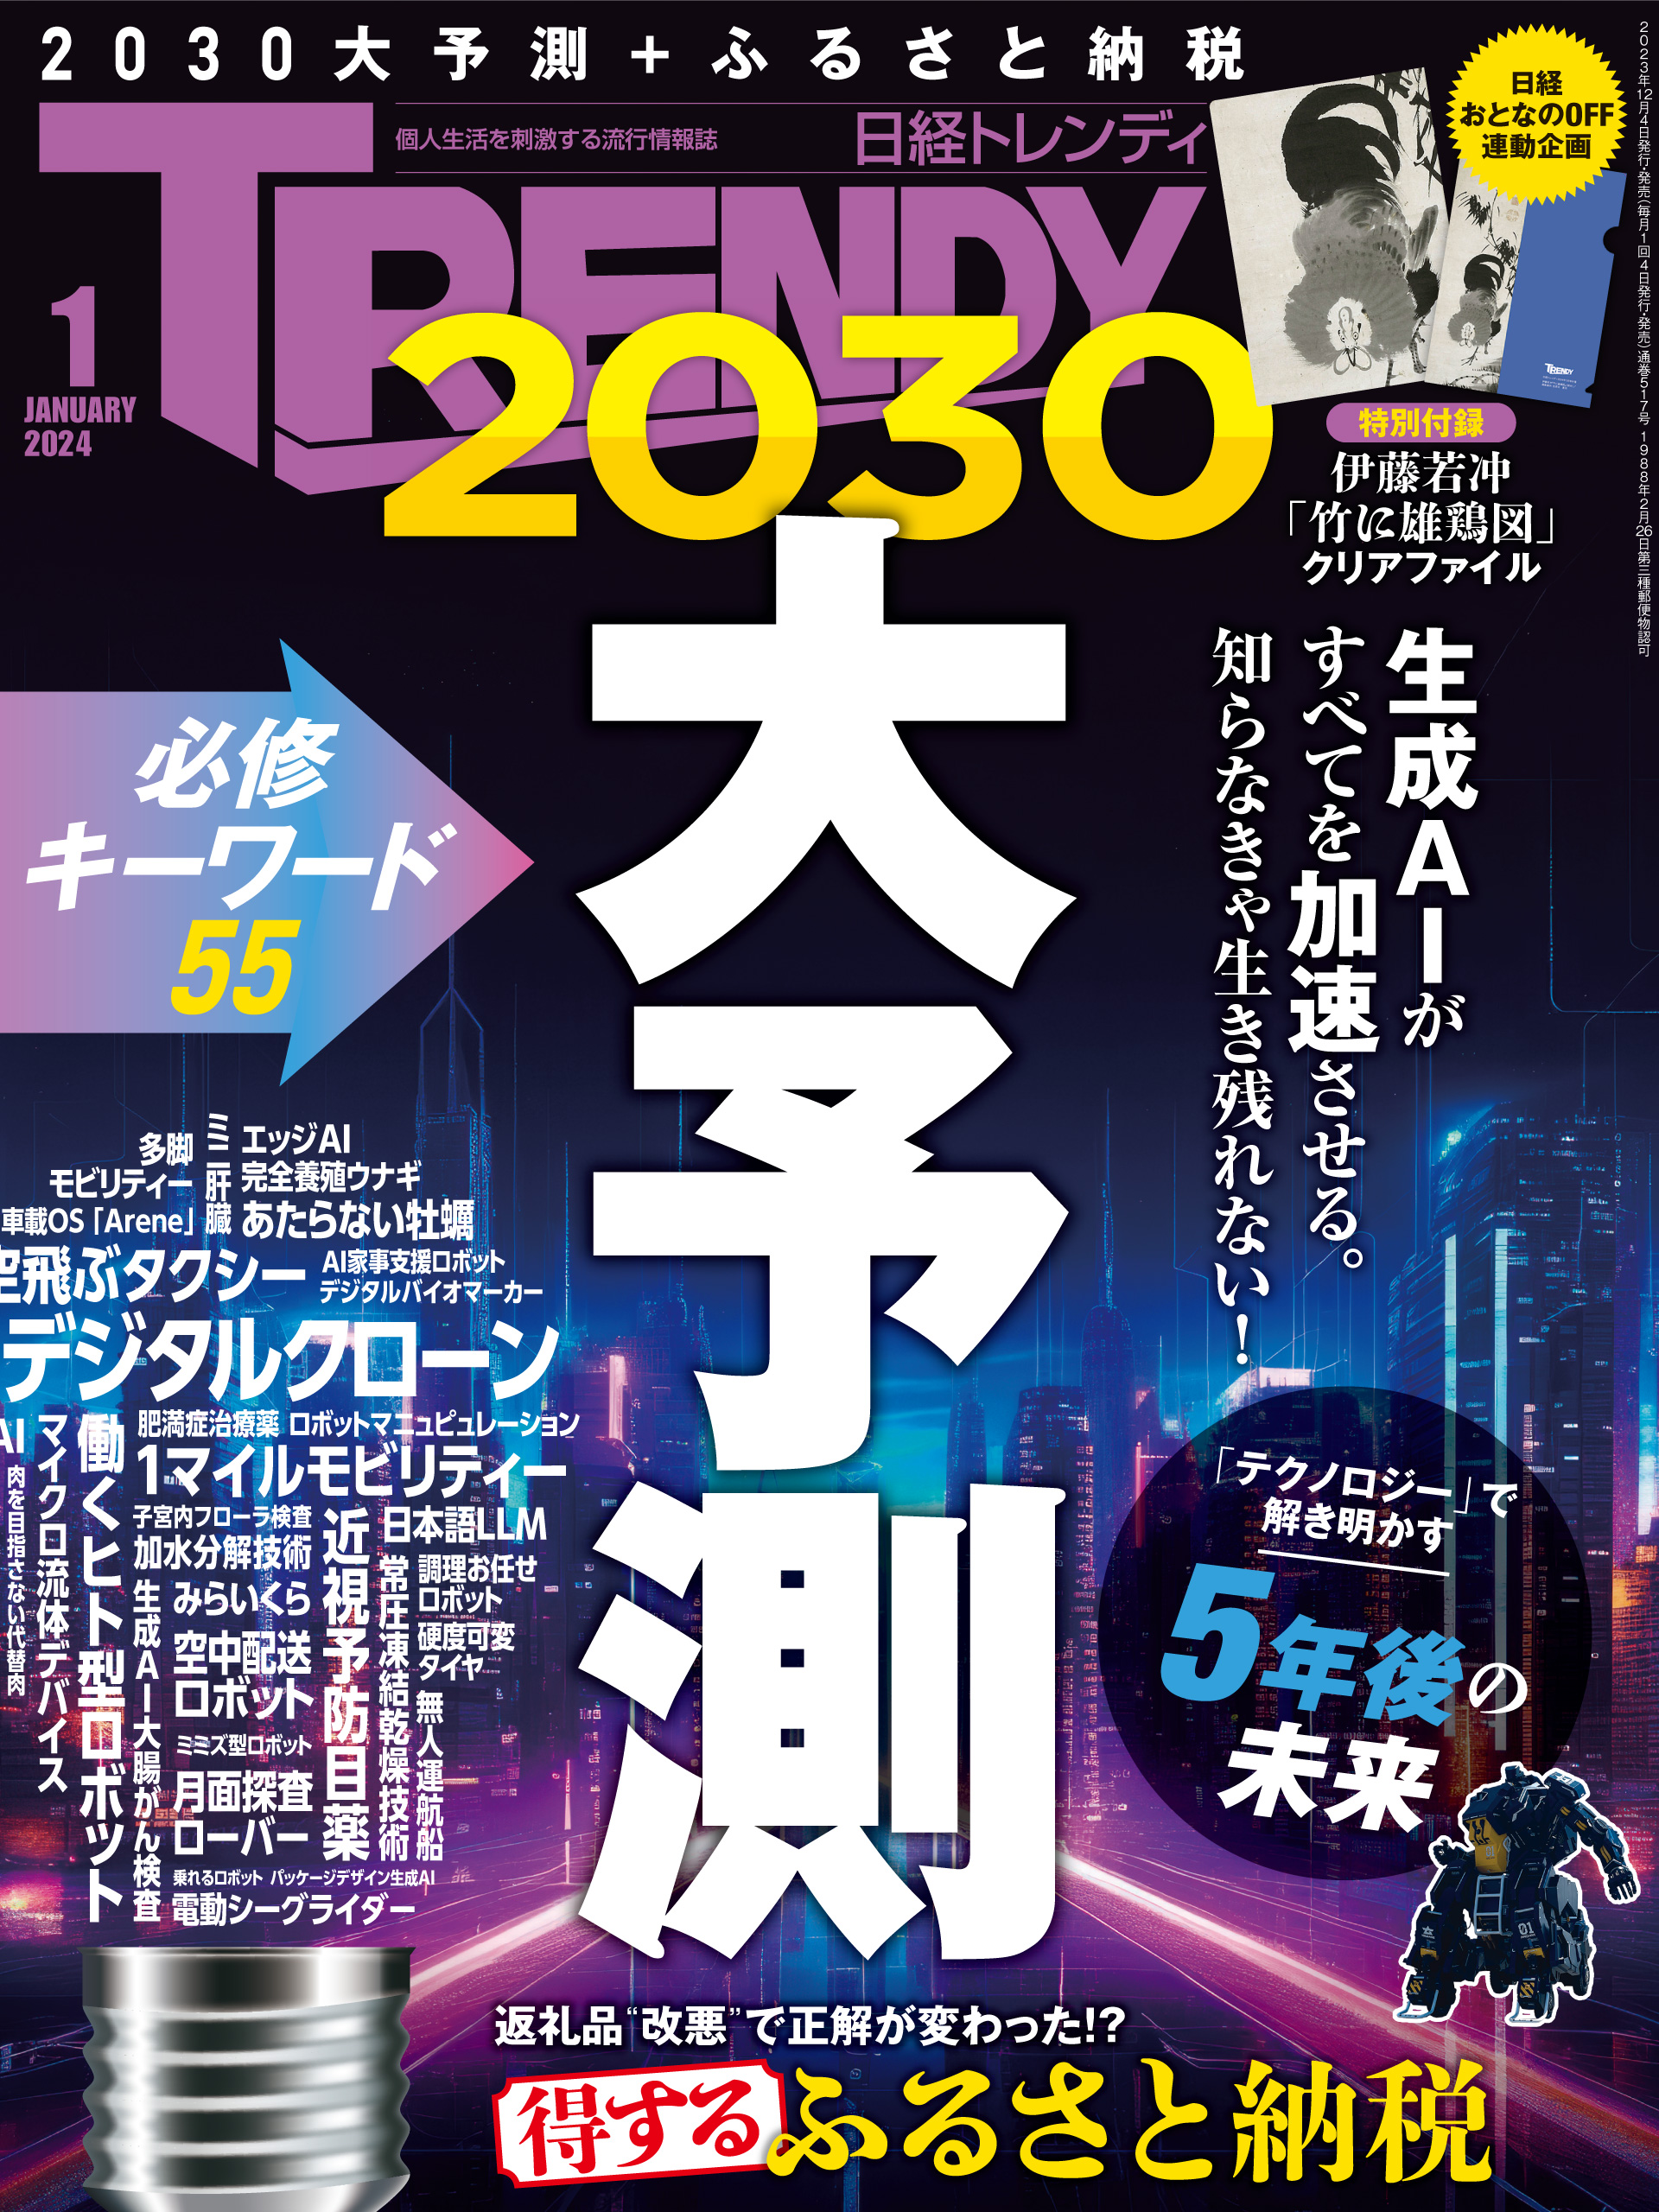 2018年 第二弾 福岡ソフトバンクホークス 限定nanaco カード 日本一